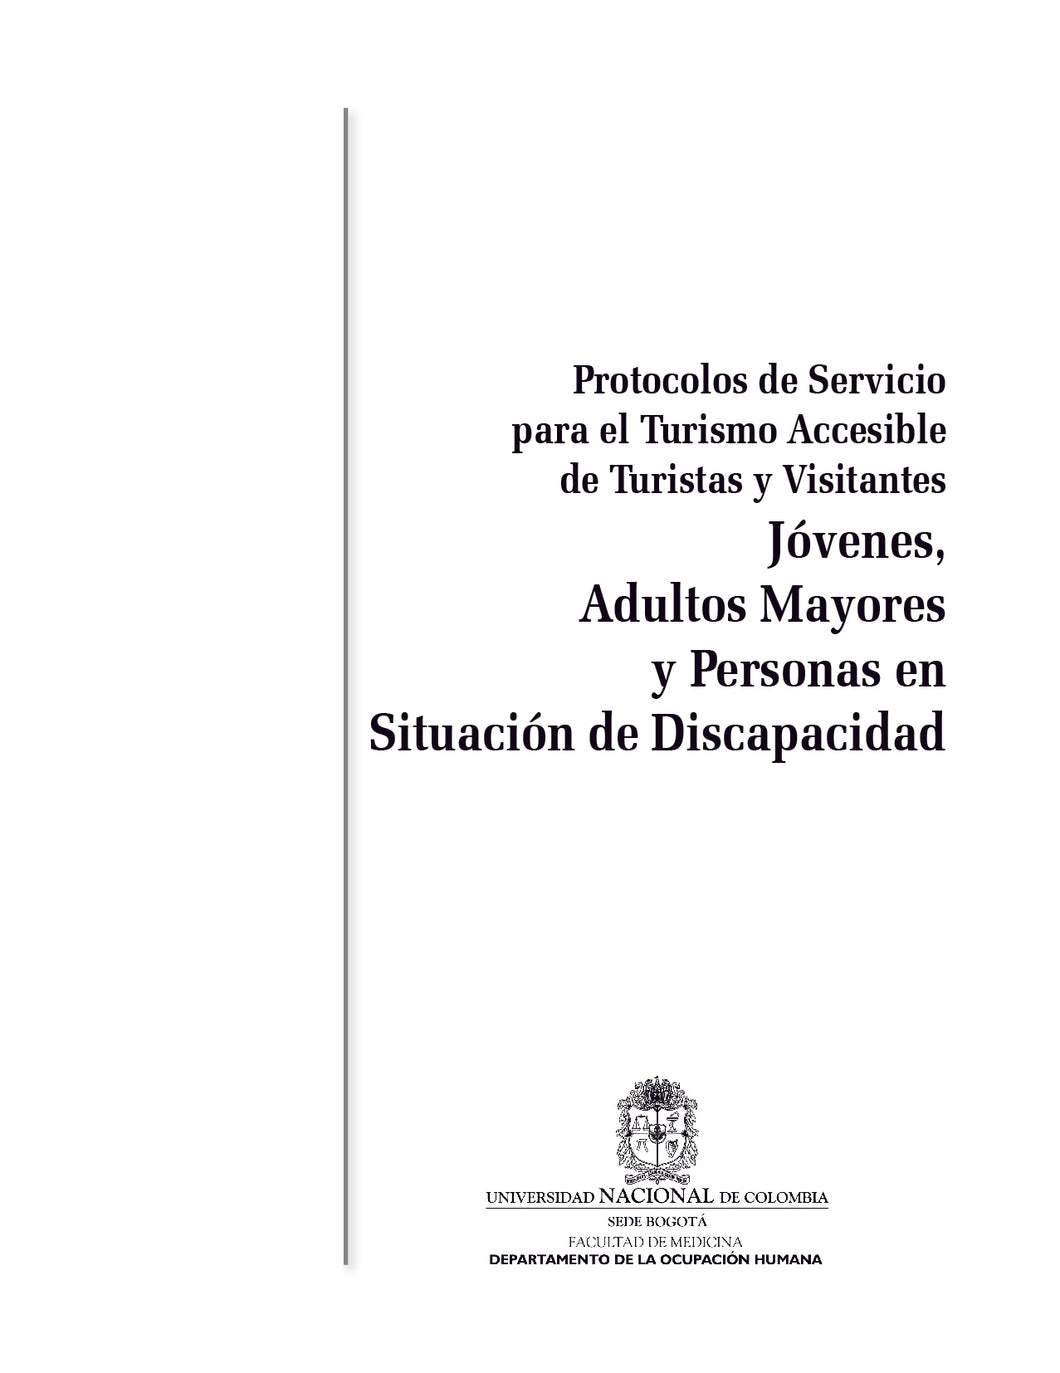 Portada Manual:  Protocolos de servicio para el turismo accesible de turistas y visitantes jóvenes, adultos mayores y personas en situación de discapacidad